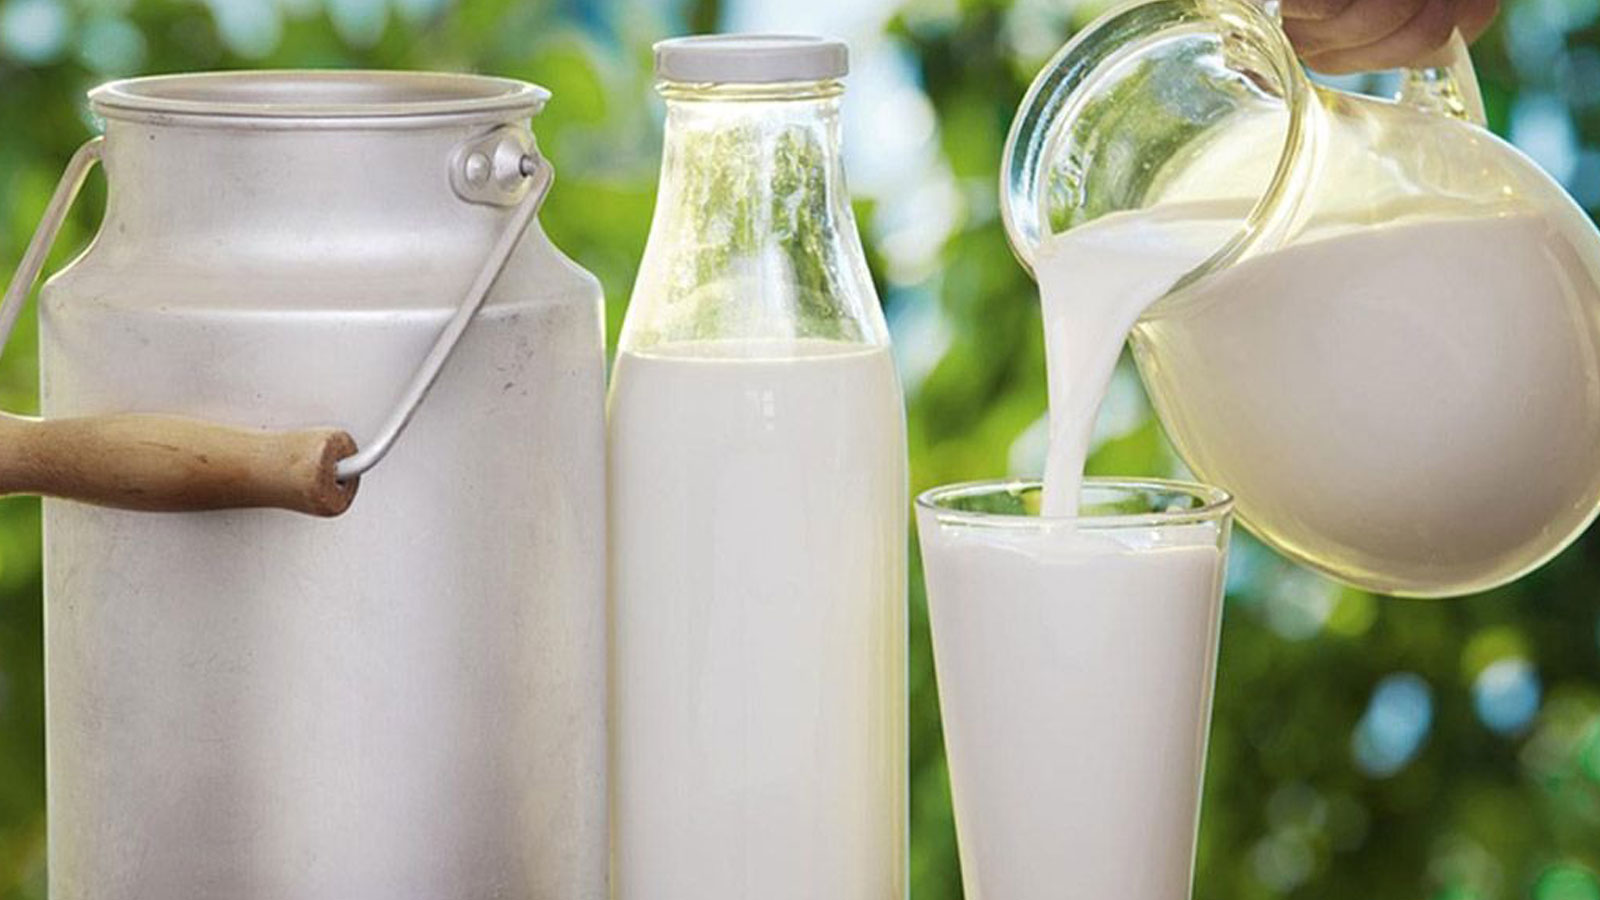 Bozuk süt kötü kokar, kıvamı pütür pütür ve yoğundur.